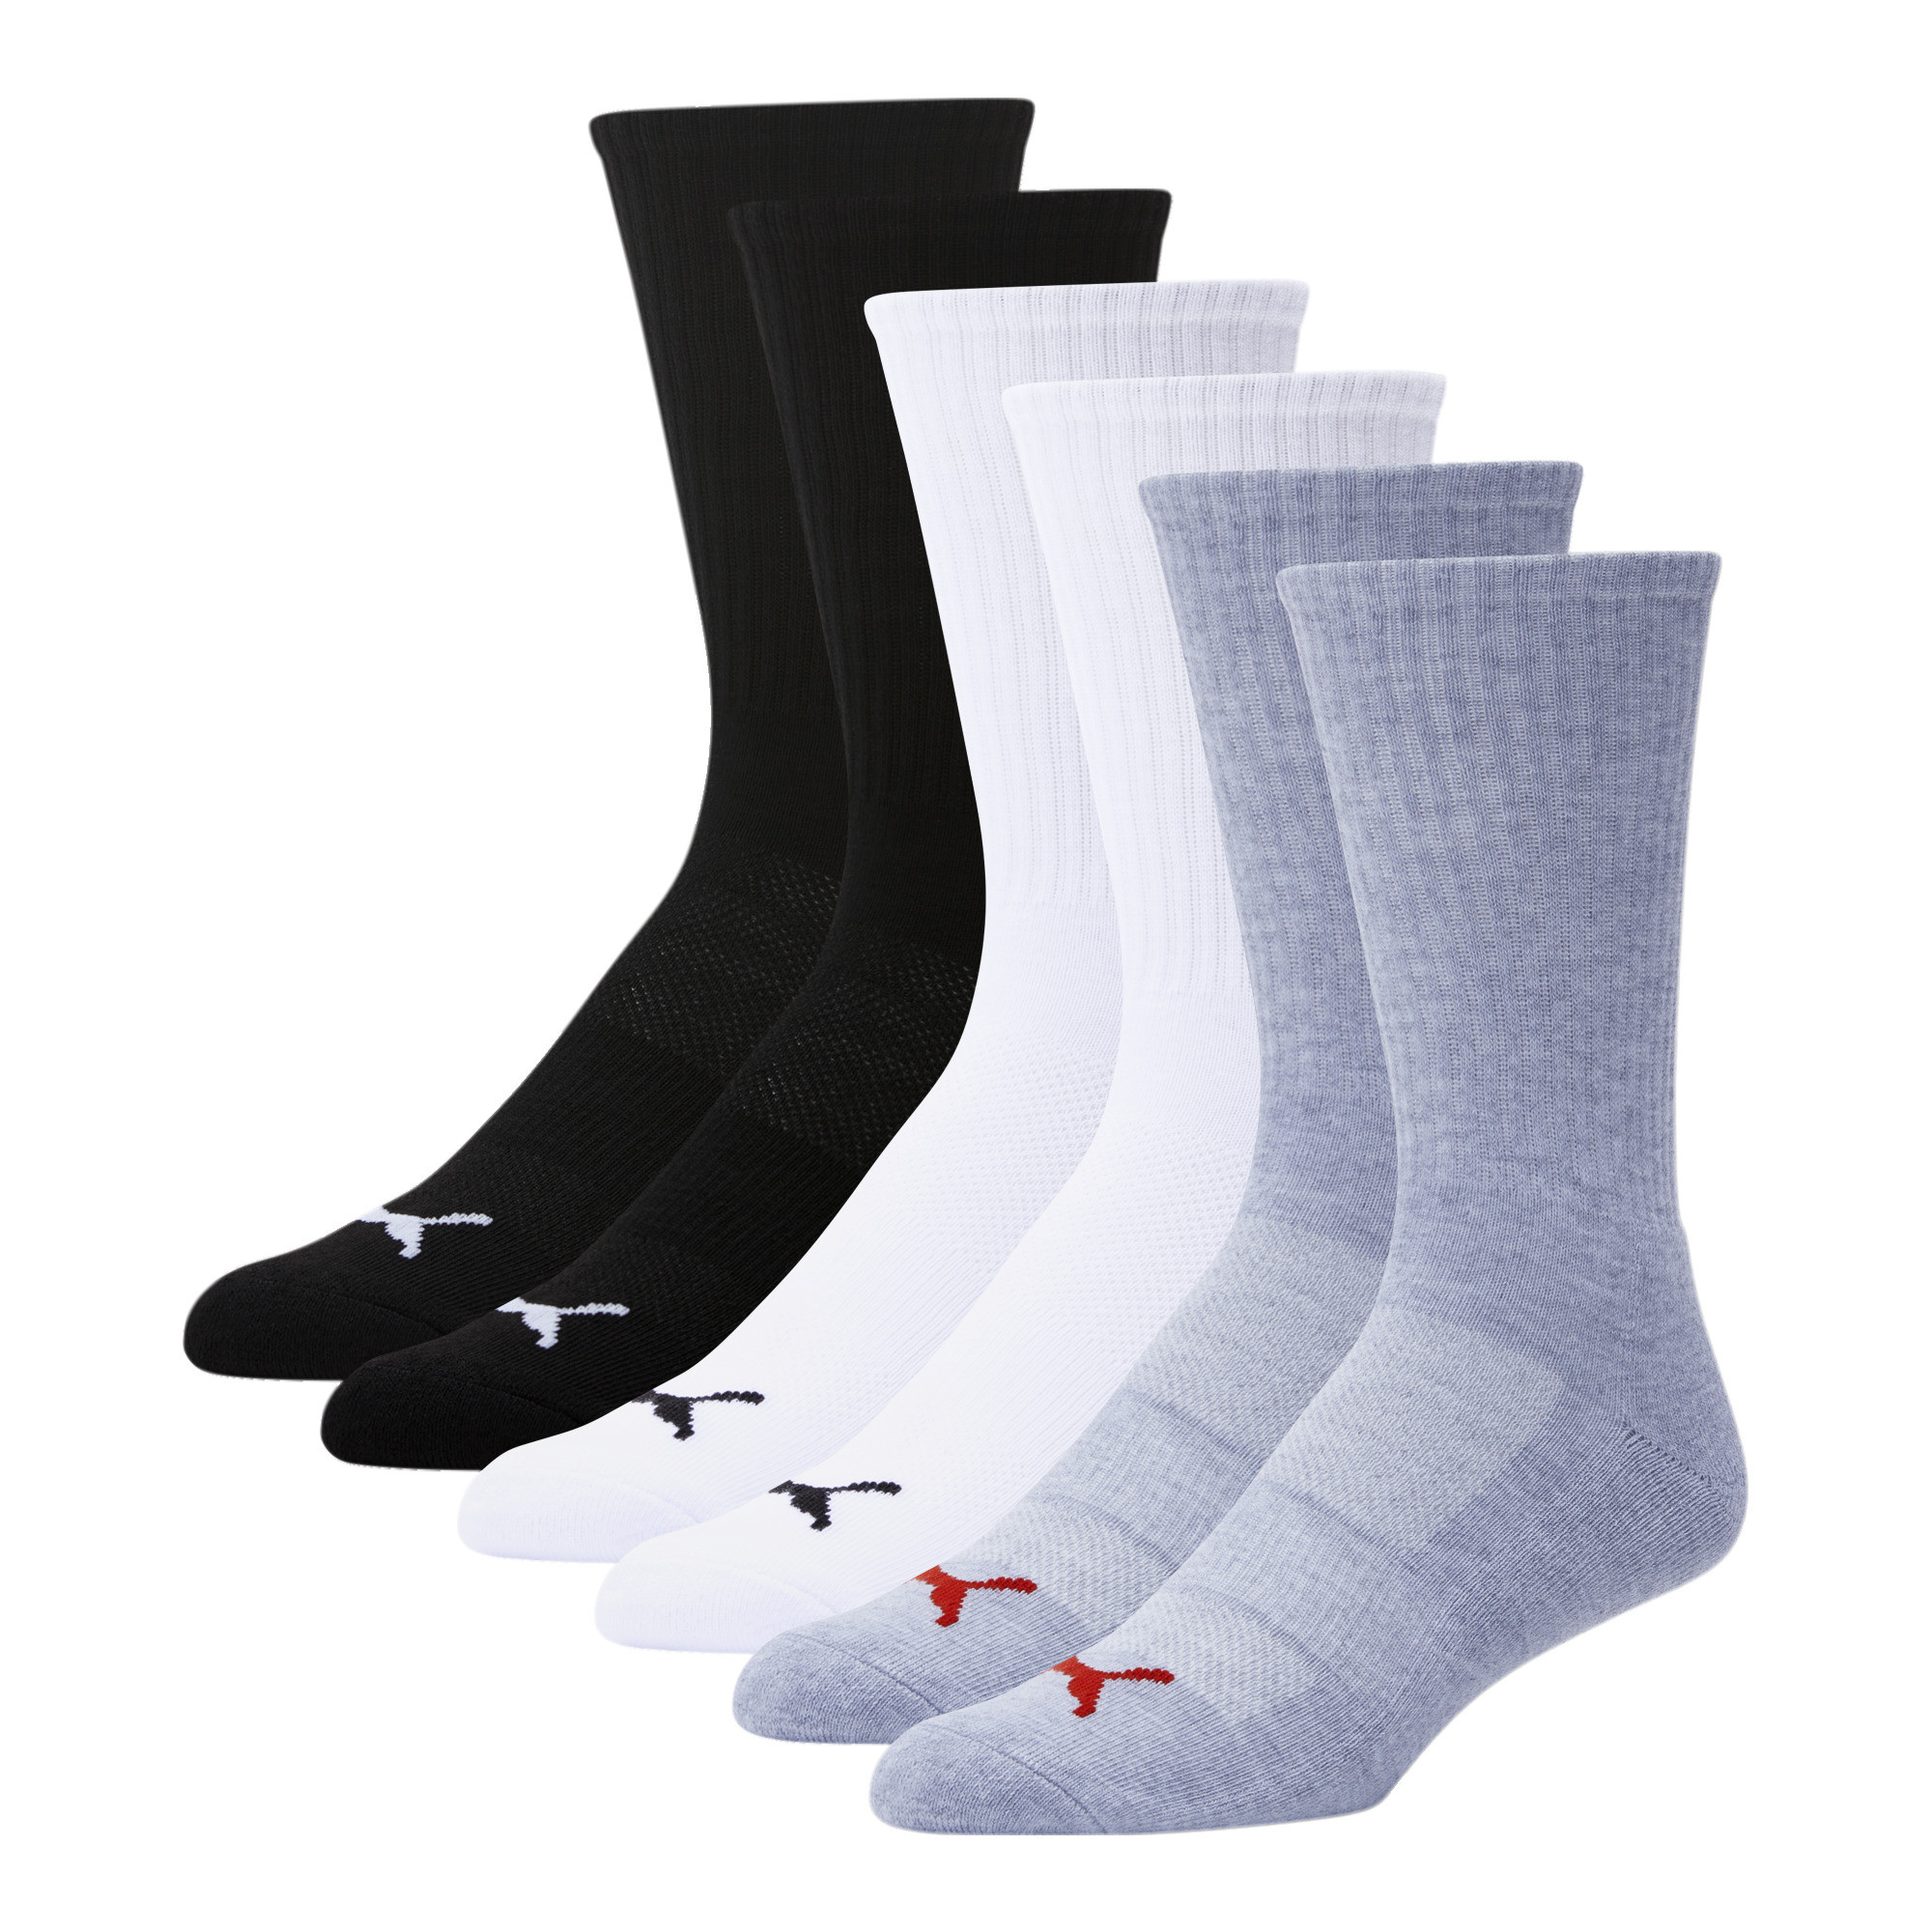 PUMA Men's Crew Outline Socks [6 Pack] Gray Size 10-13